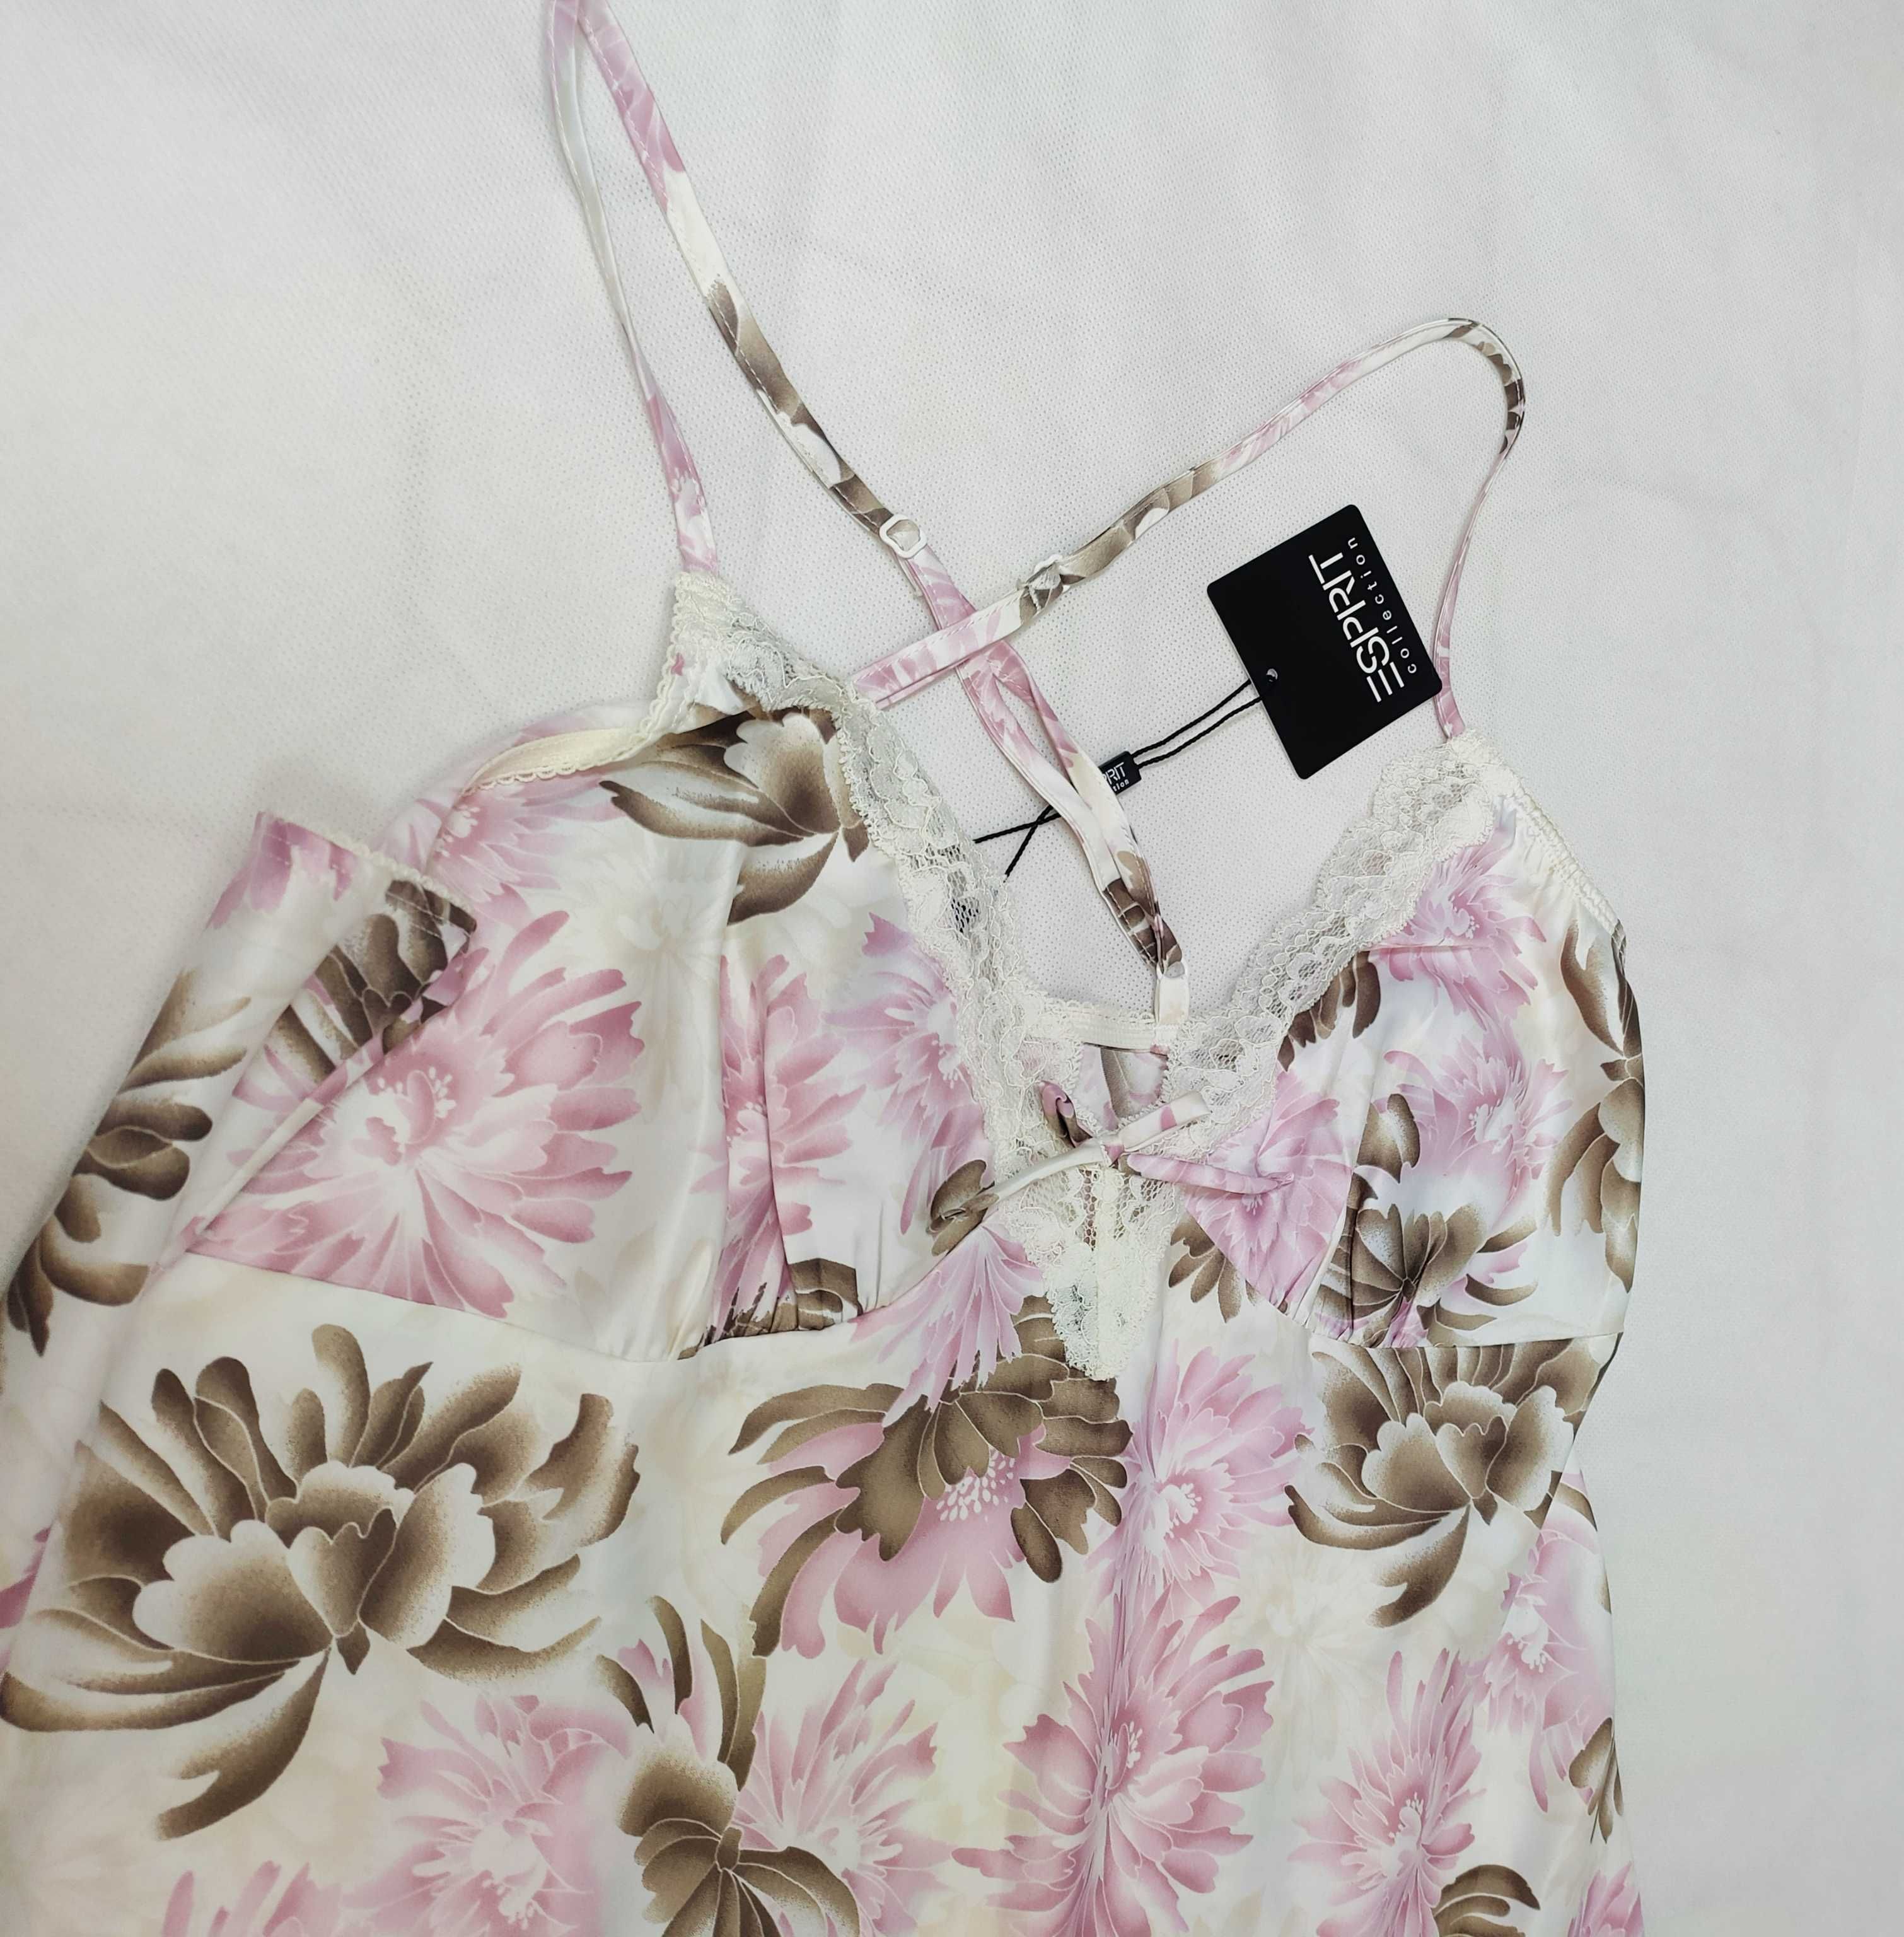 Piżama damska halka ESPRIT biała w kwiaty krótka z koronką 40 L